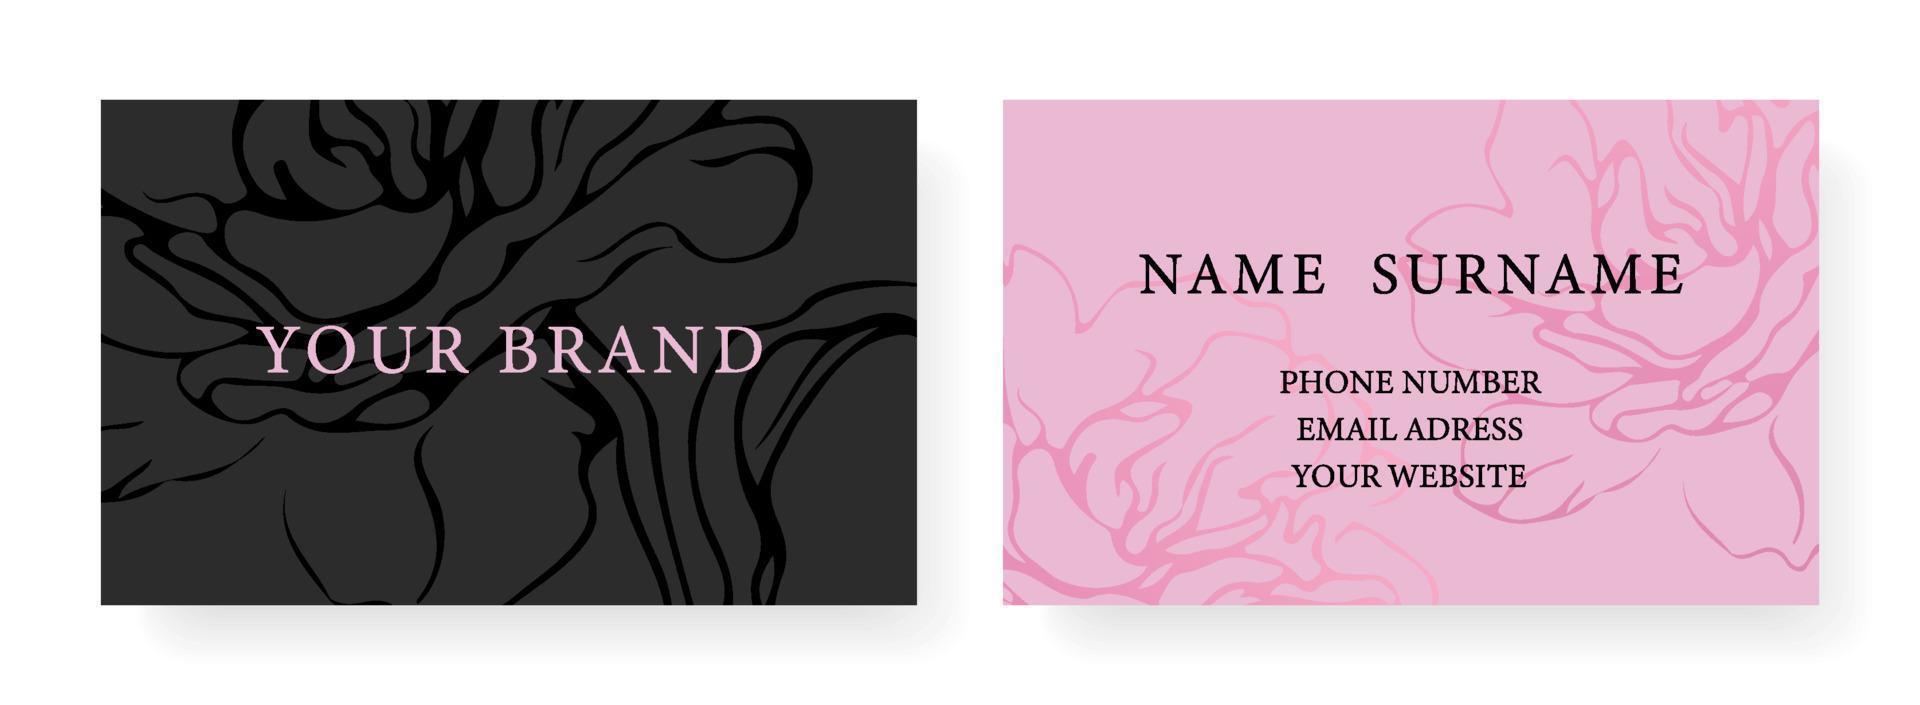 diseño de plantilla de tarjeta de visita fondo moderno floral de lujo en colores rosa suave. plantilla vectorial para banner, invitación premium, vale de lujo, prestigioso certificado de regalo. vector